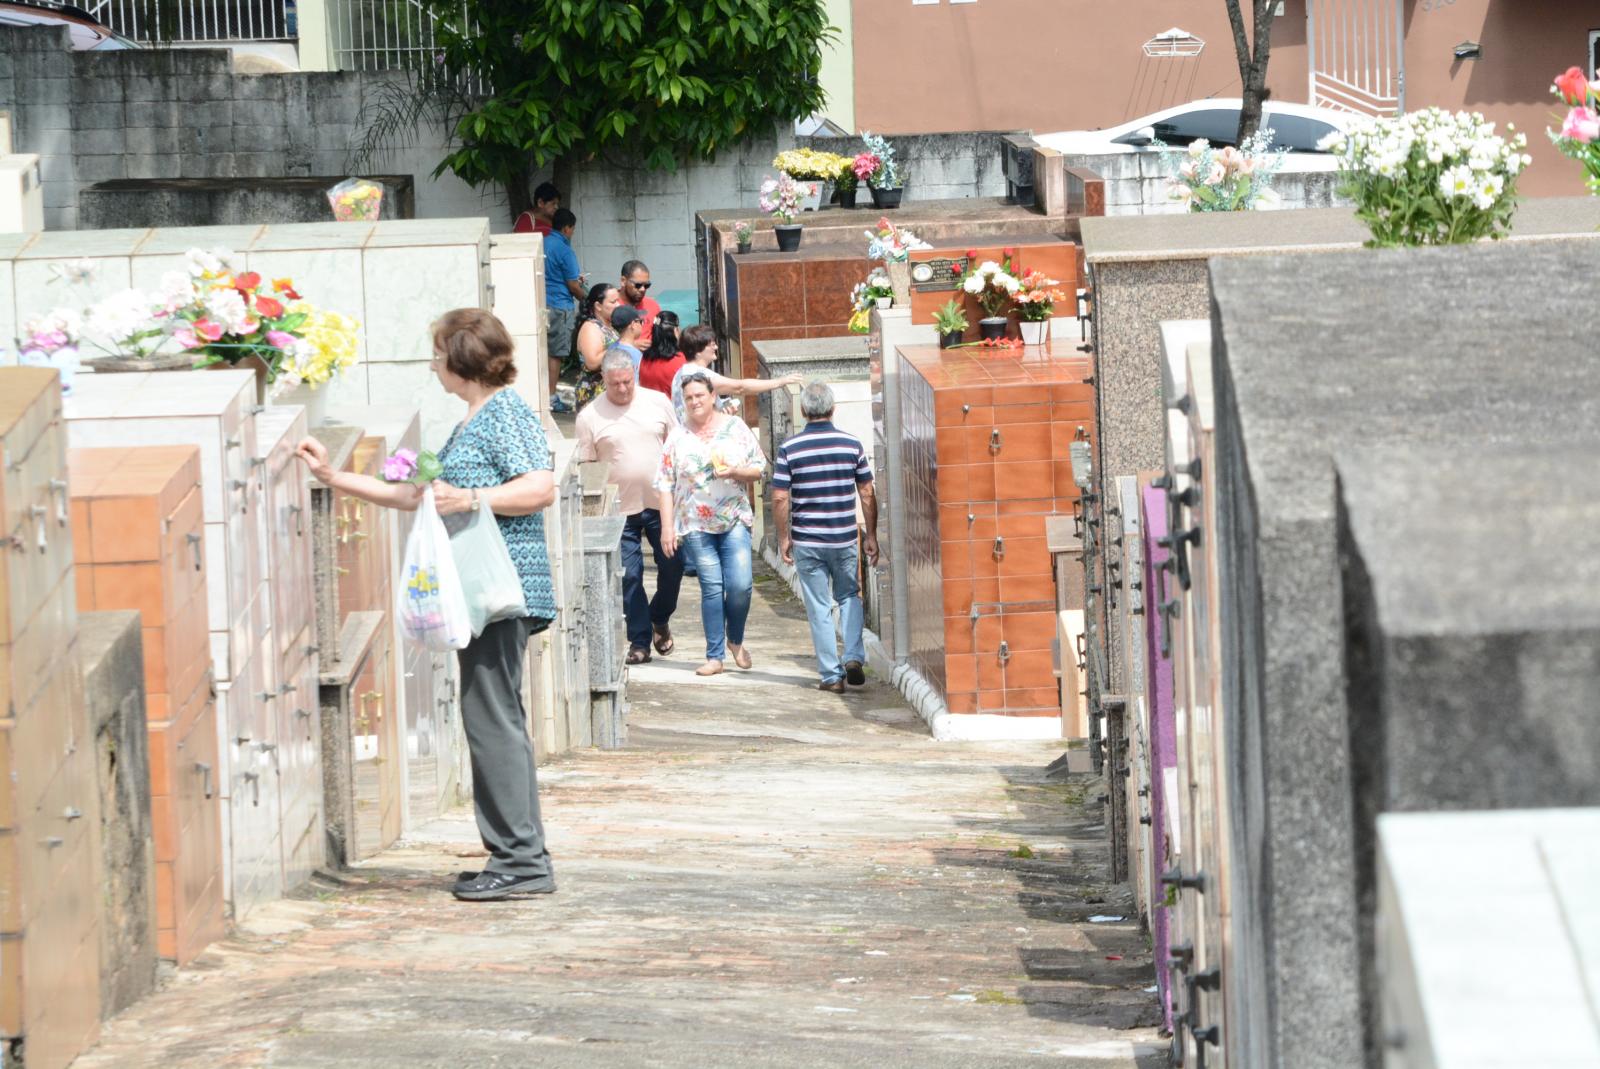 Cemitério Municipal e Parque das Acácias promovem celebrações religiosas 